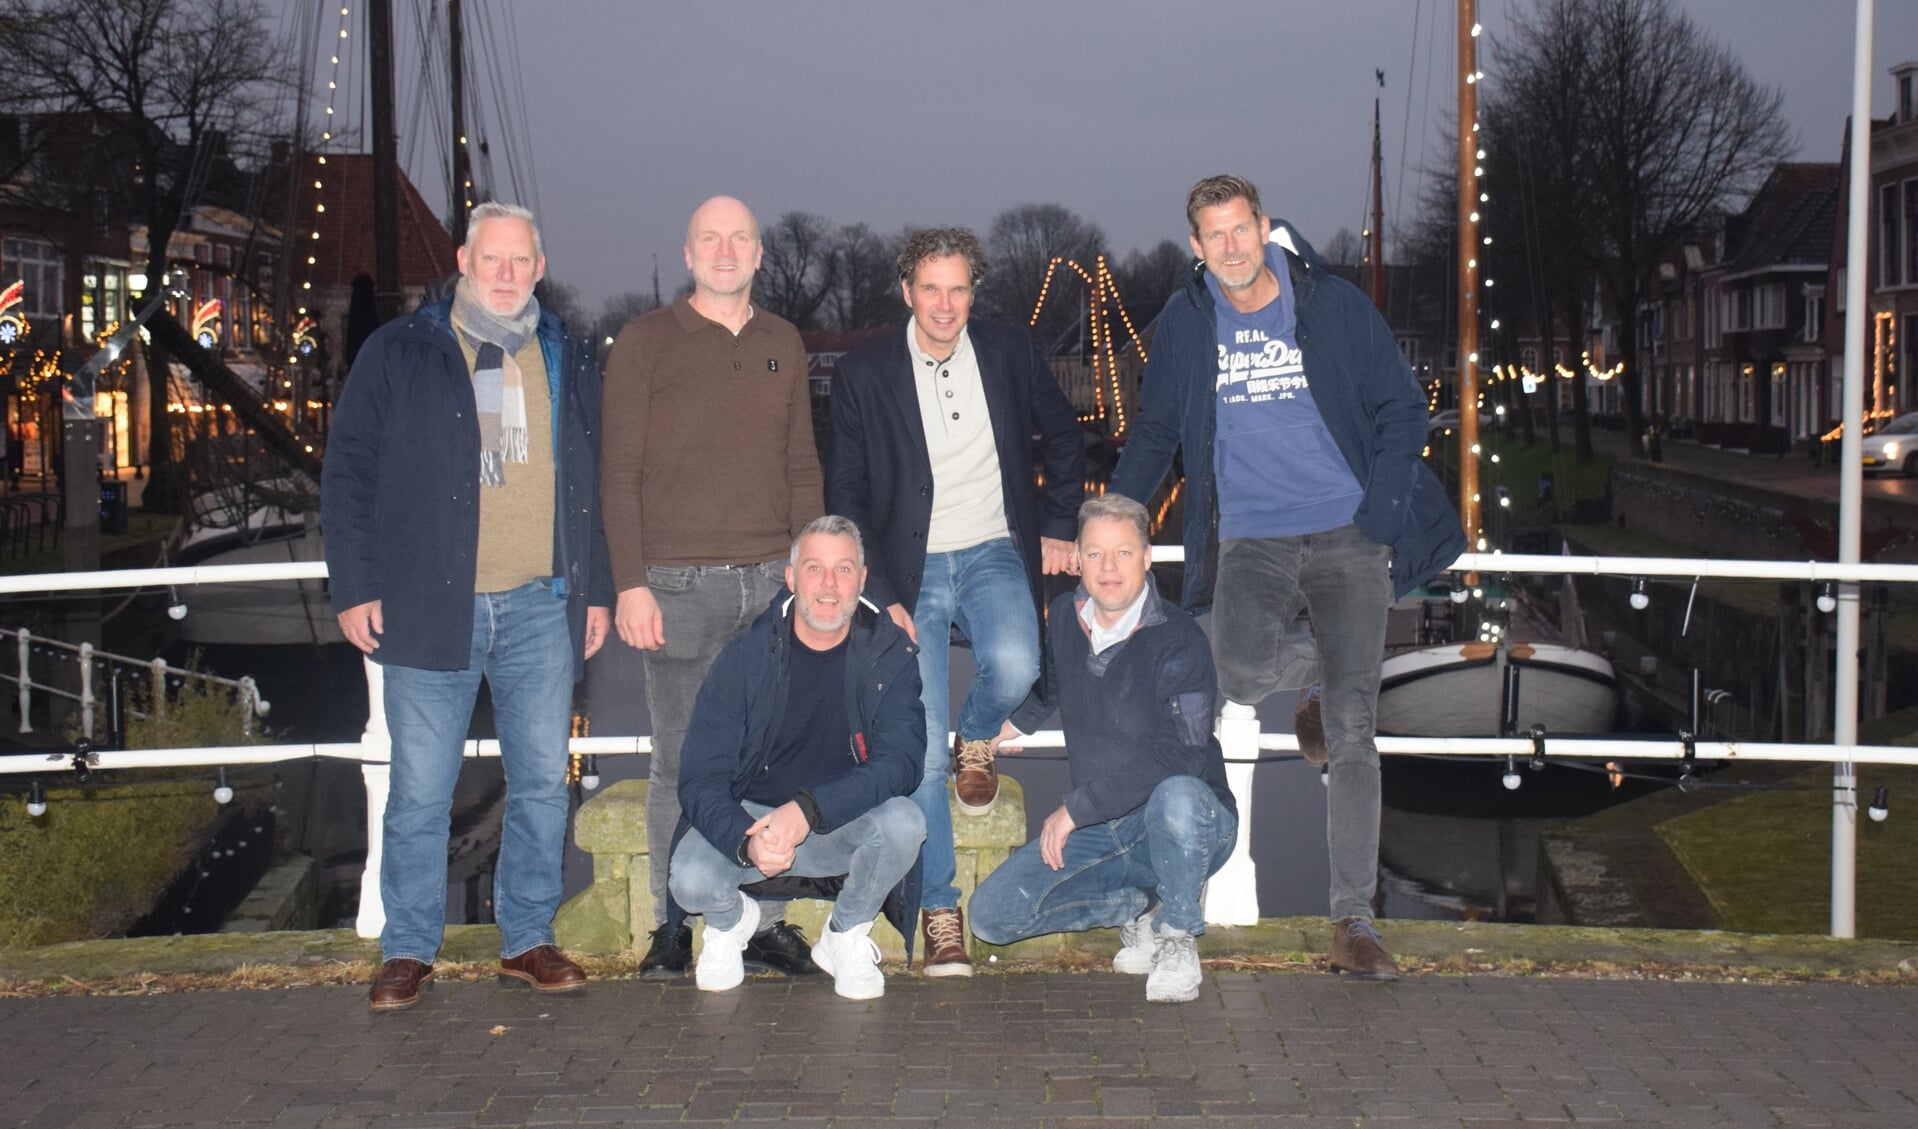 V.l.n.r.: Kees Theissen (Stichting Altijd Doen), Gaathze Kloosterman, (Lions Dokkum Bonifatius), Karel Hellinga (Altijd Doen), Sjoerd Radersma (Lions), Edwin de Vries (Lions) en Marcel Dol (Altijd Doen).